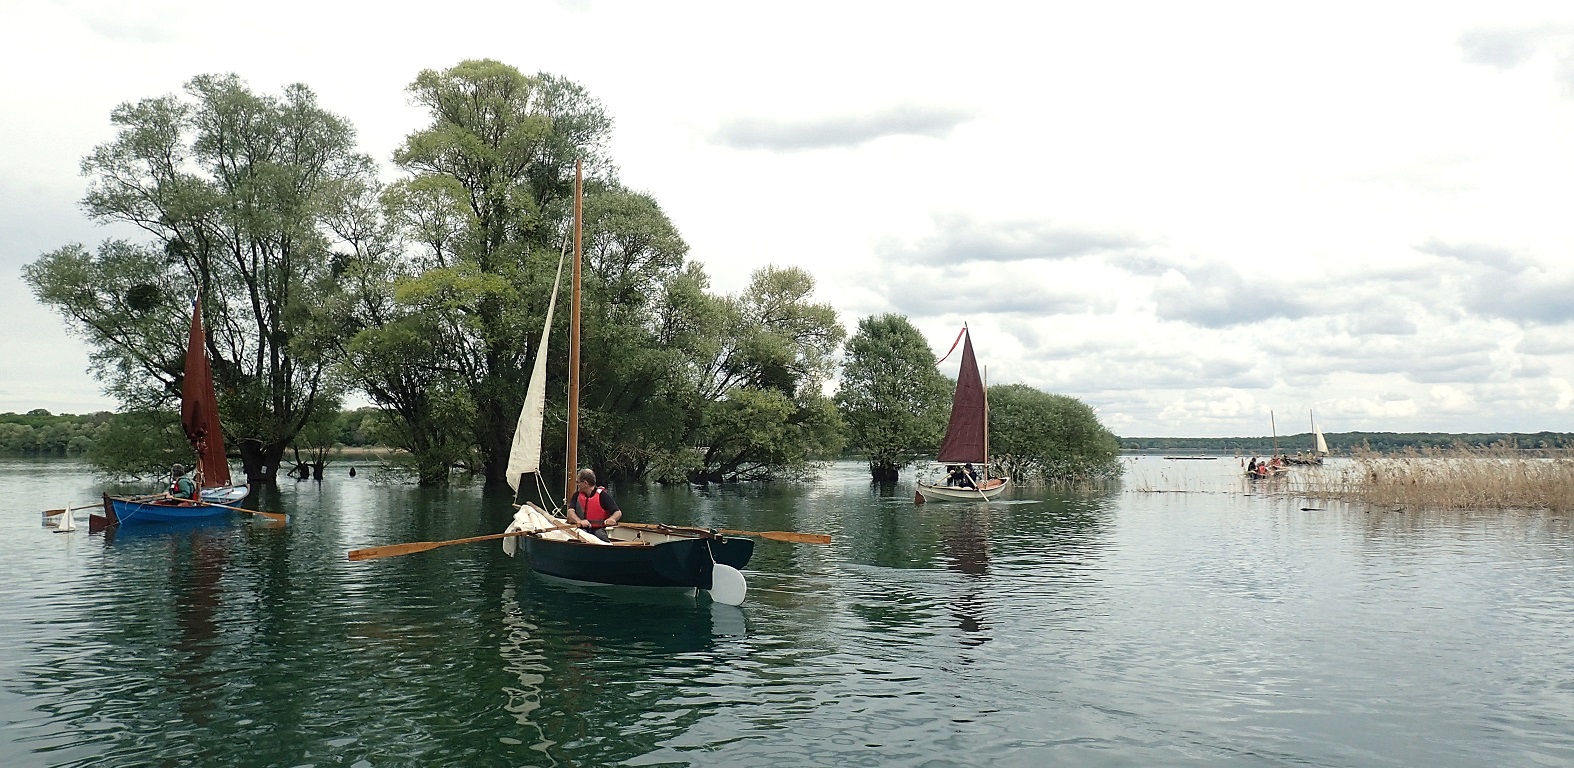 Et on se met en route pour retraverser et sortir les bateaux sur la magnifique cale du Mesnil-St-Père. A l'année prochaine ! 